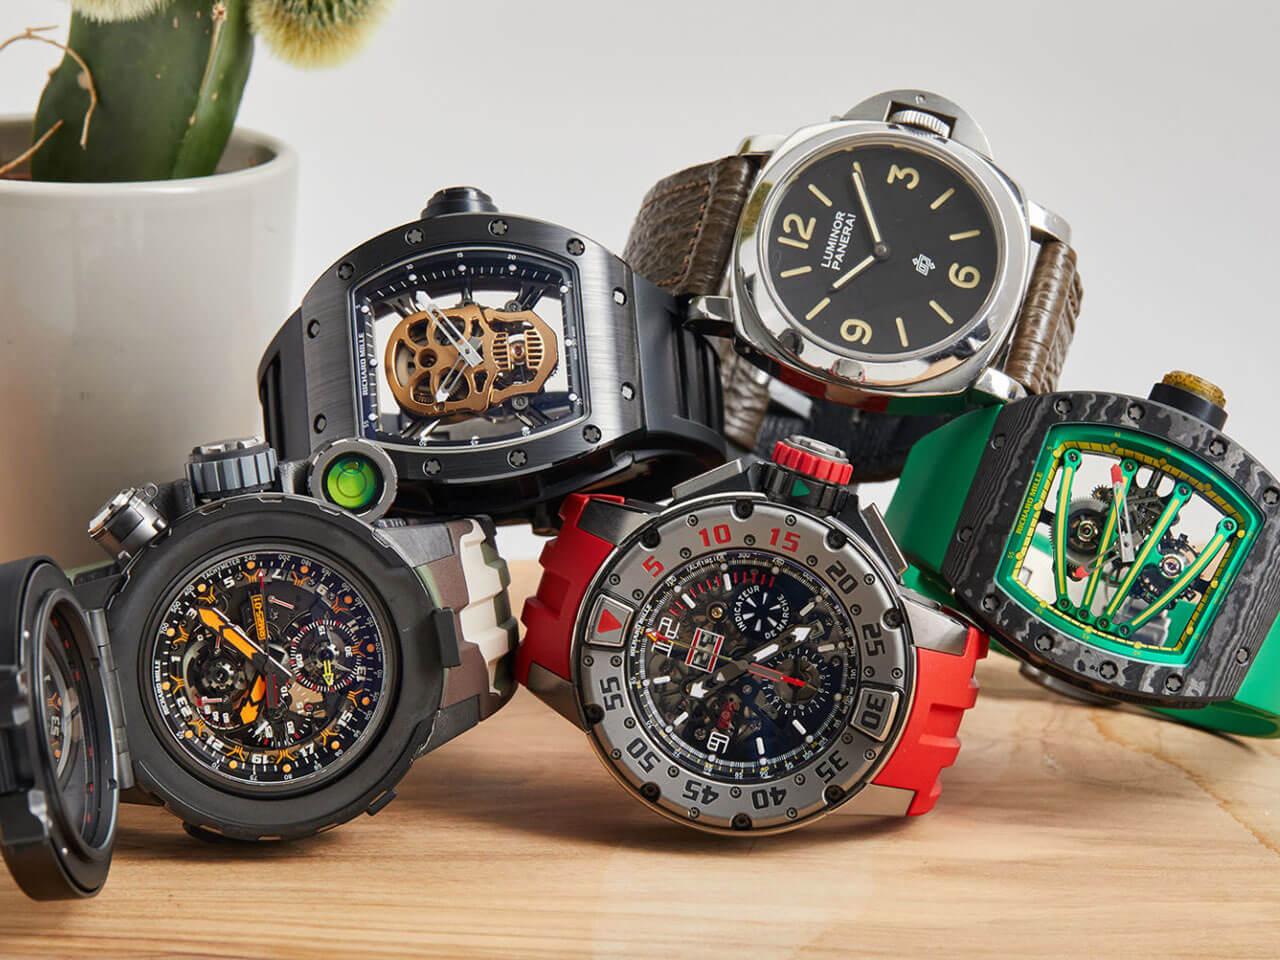 シルヴェスター・スタローン、フィリップスオークション「レーシング・パルス」に1996年のパネライ ルミノールなど計5本の腕時計を出品